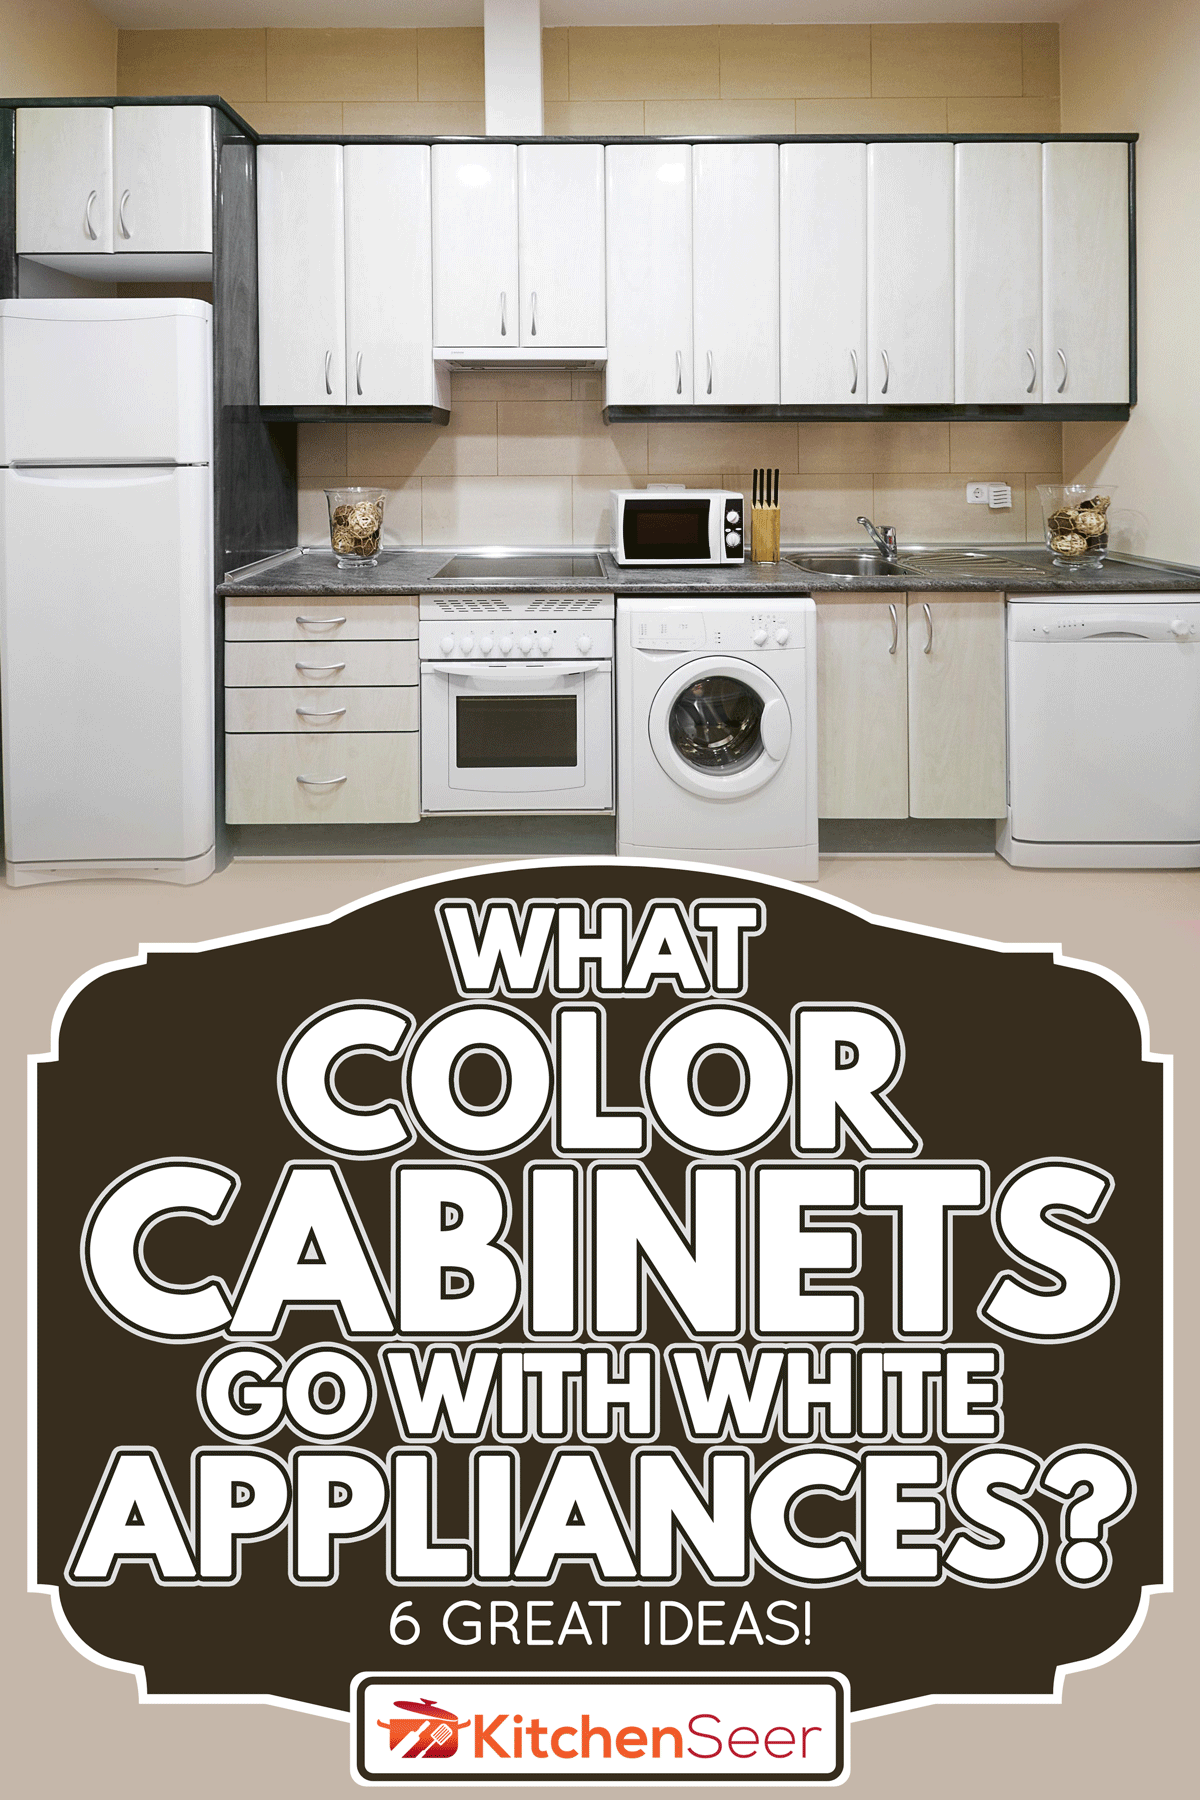 配有电器的豪华厨房，bd手机下载白色电器配什么颜色的橱柜?好主意!］